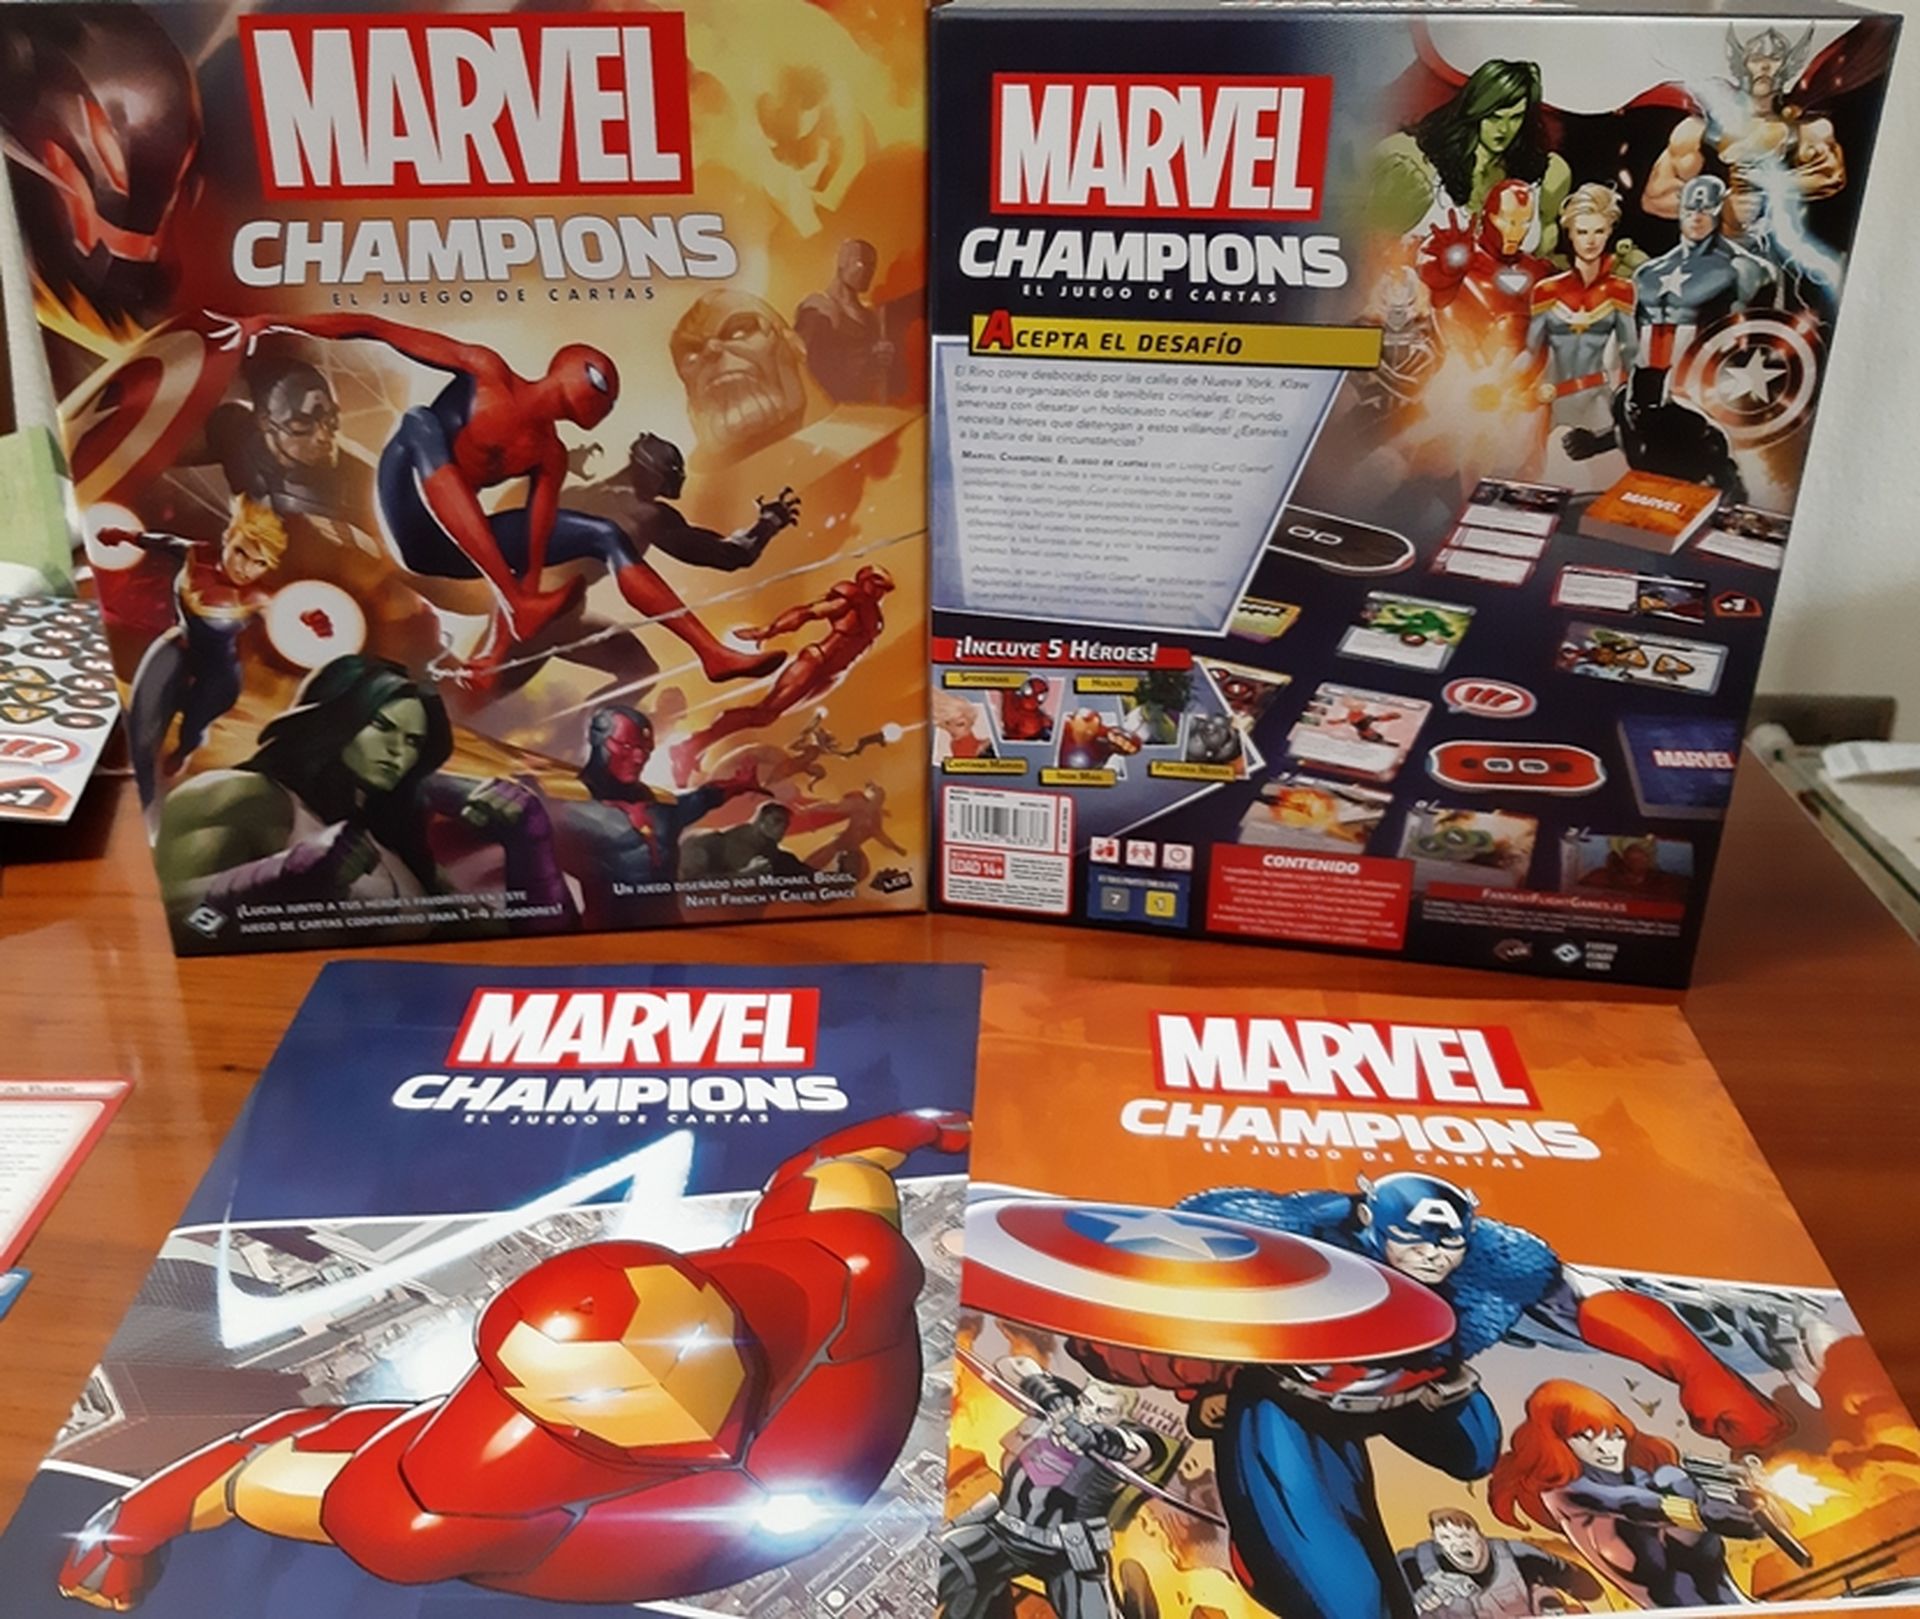 Marvel Champions - Componentes del juego de cartas